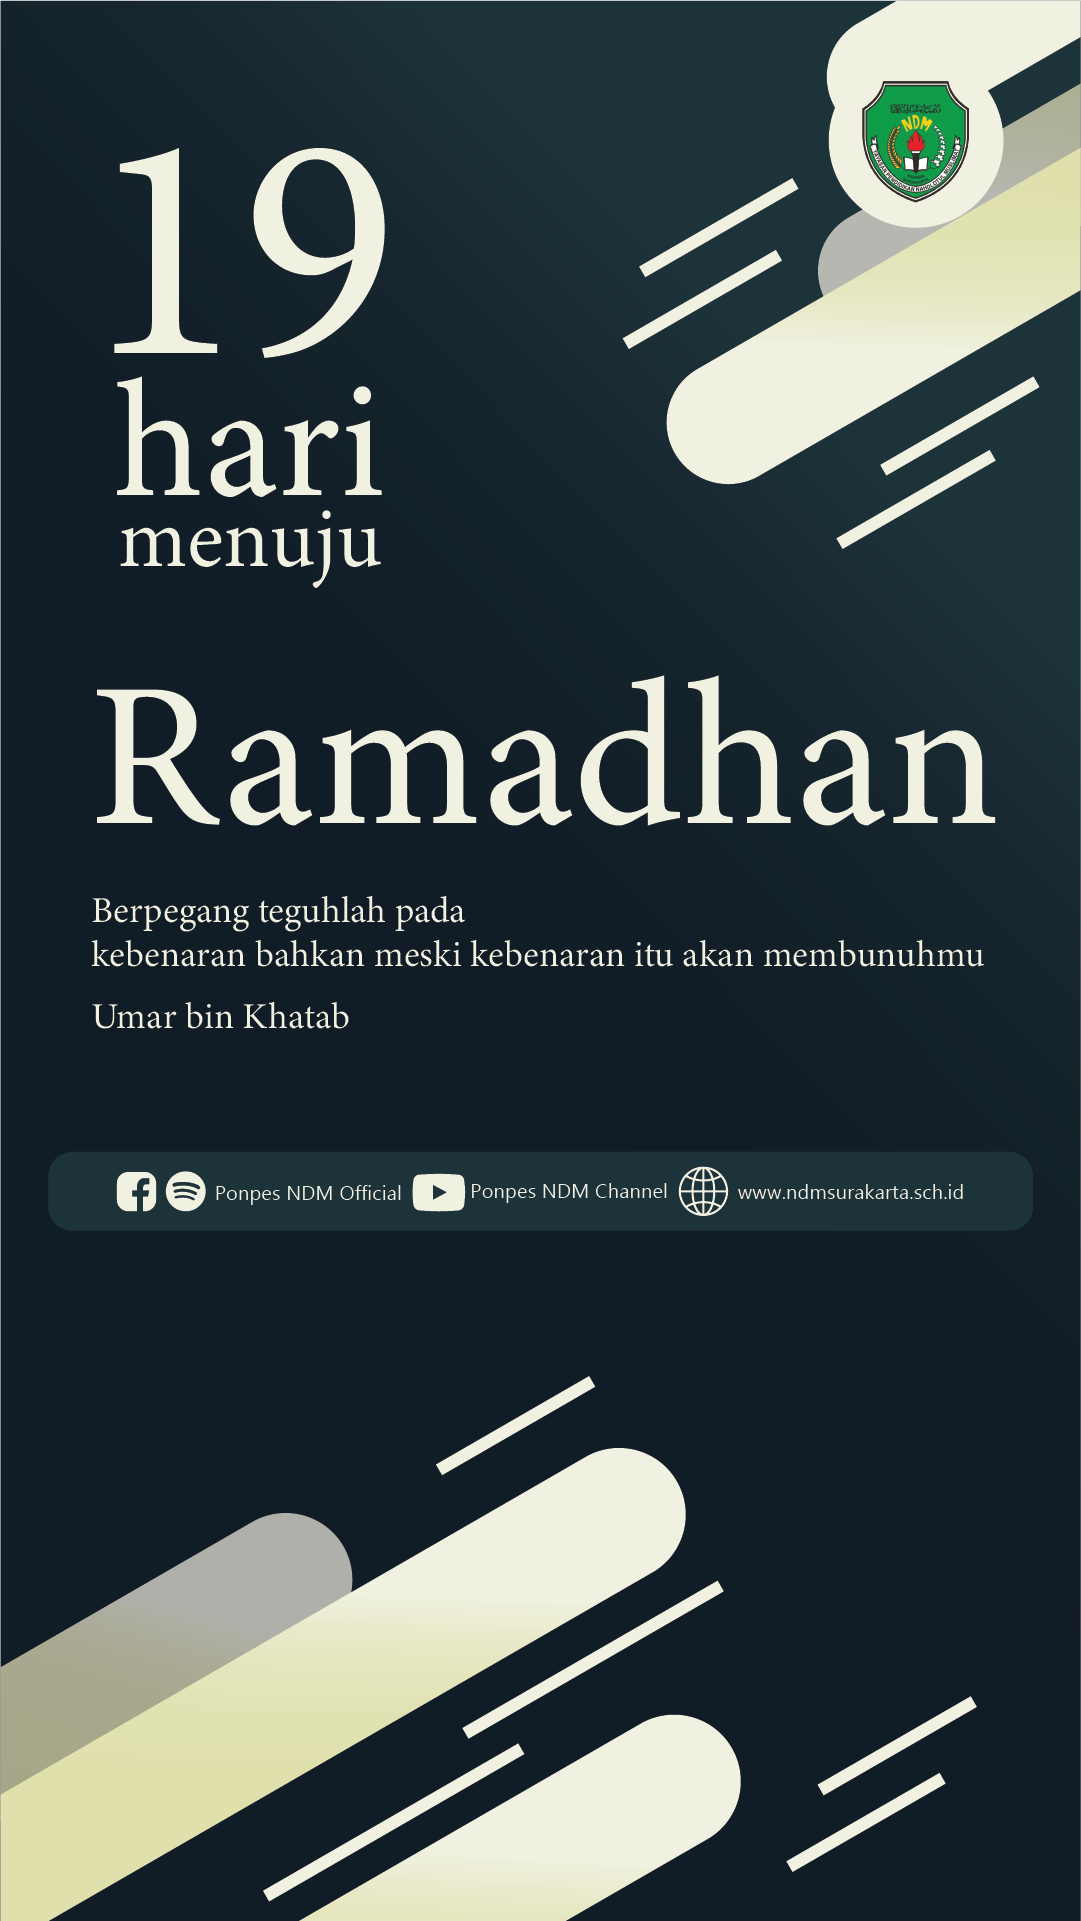 H-19 Menuju Ramadhan 1443 H / 2022 M